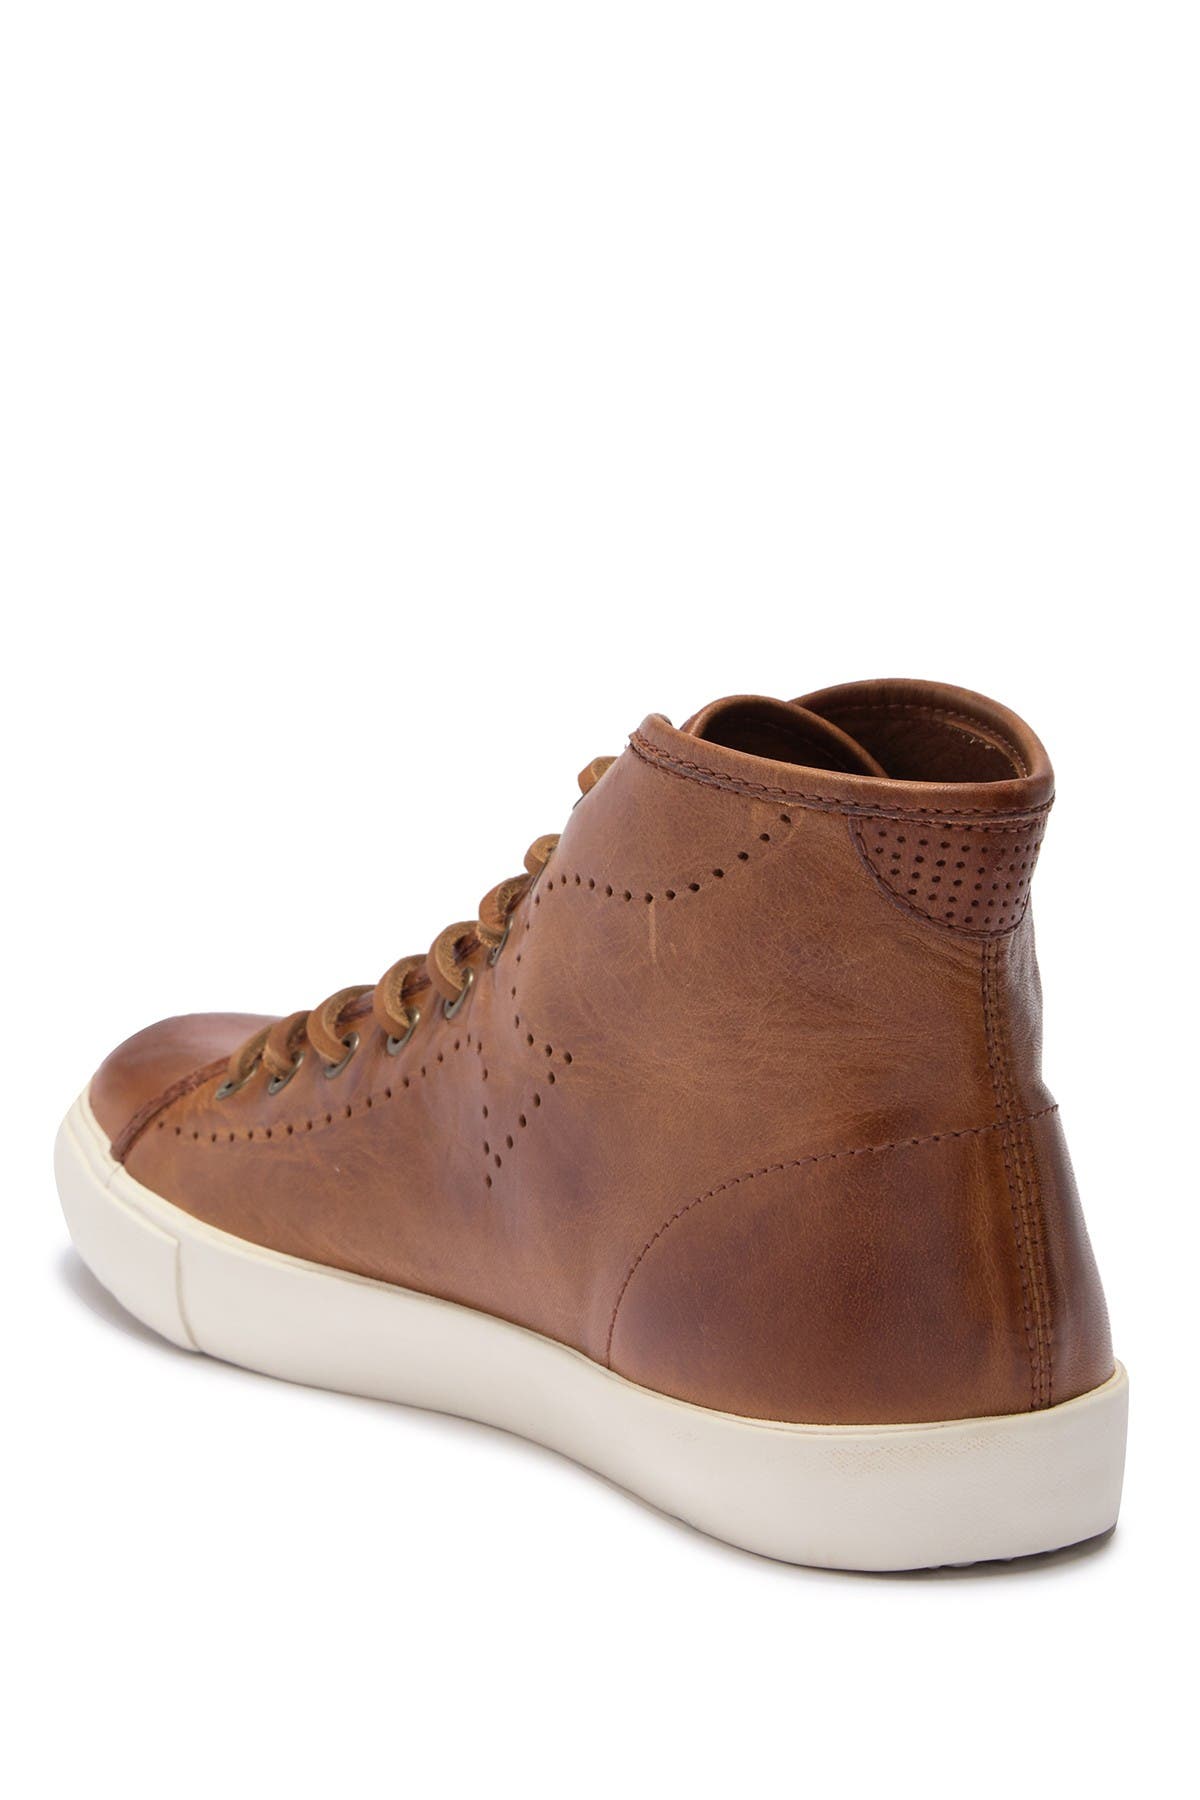 frye brett high leather sneaker